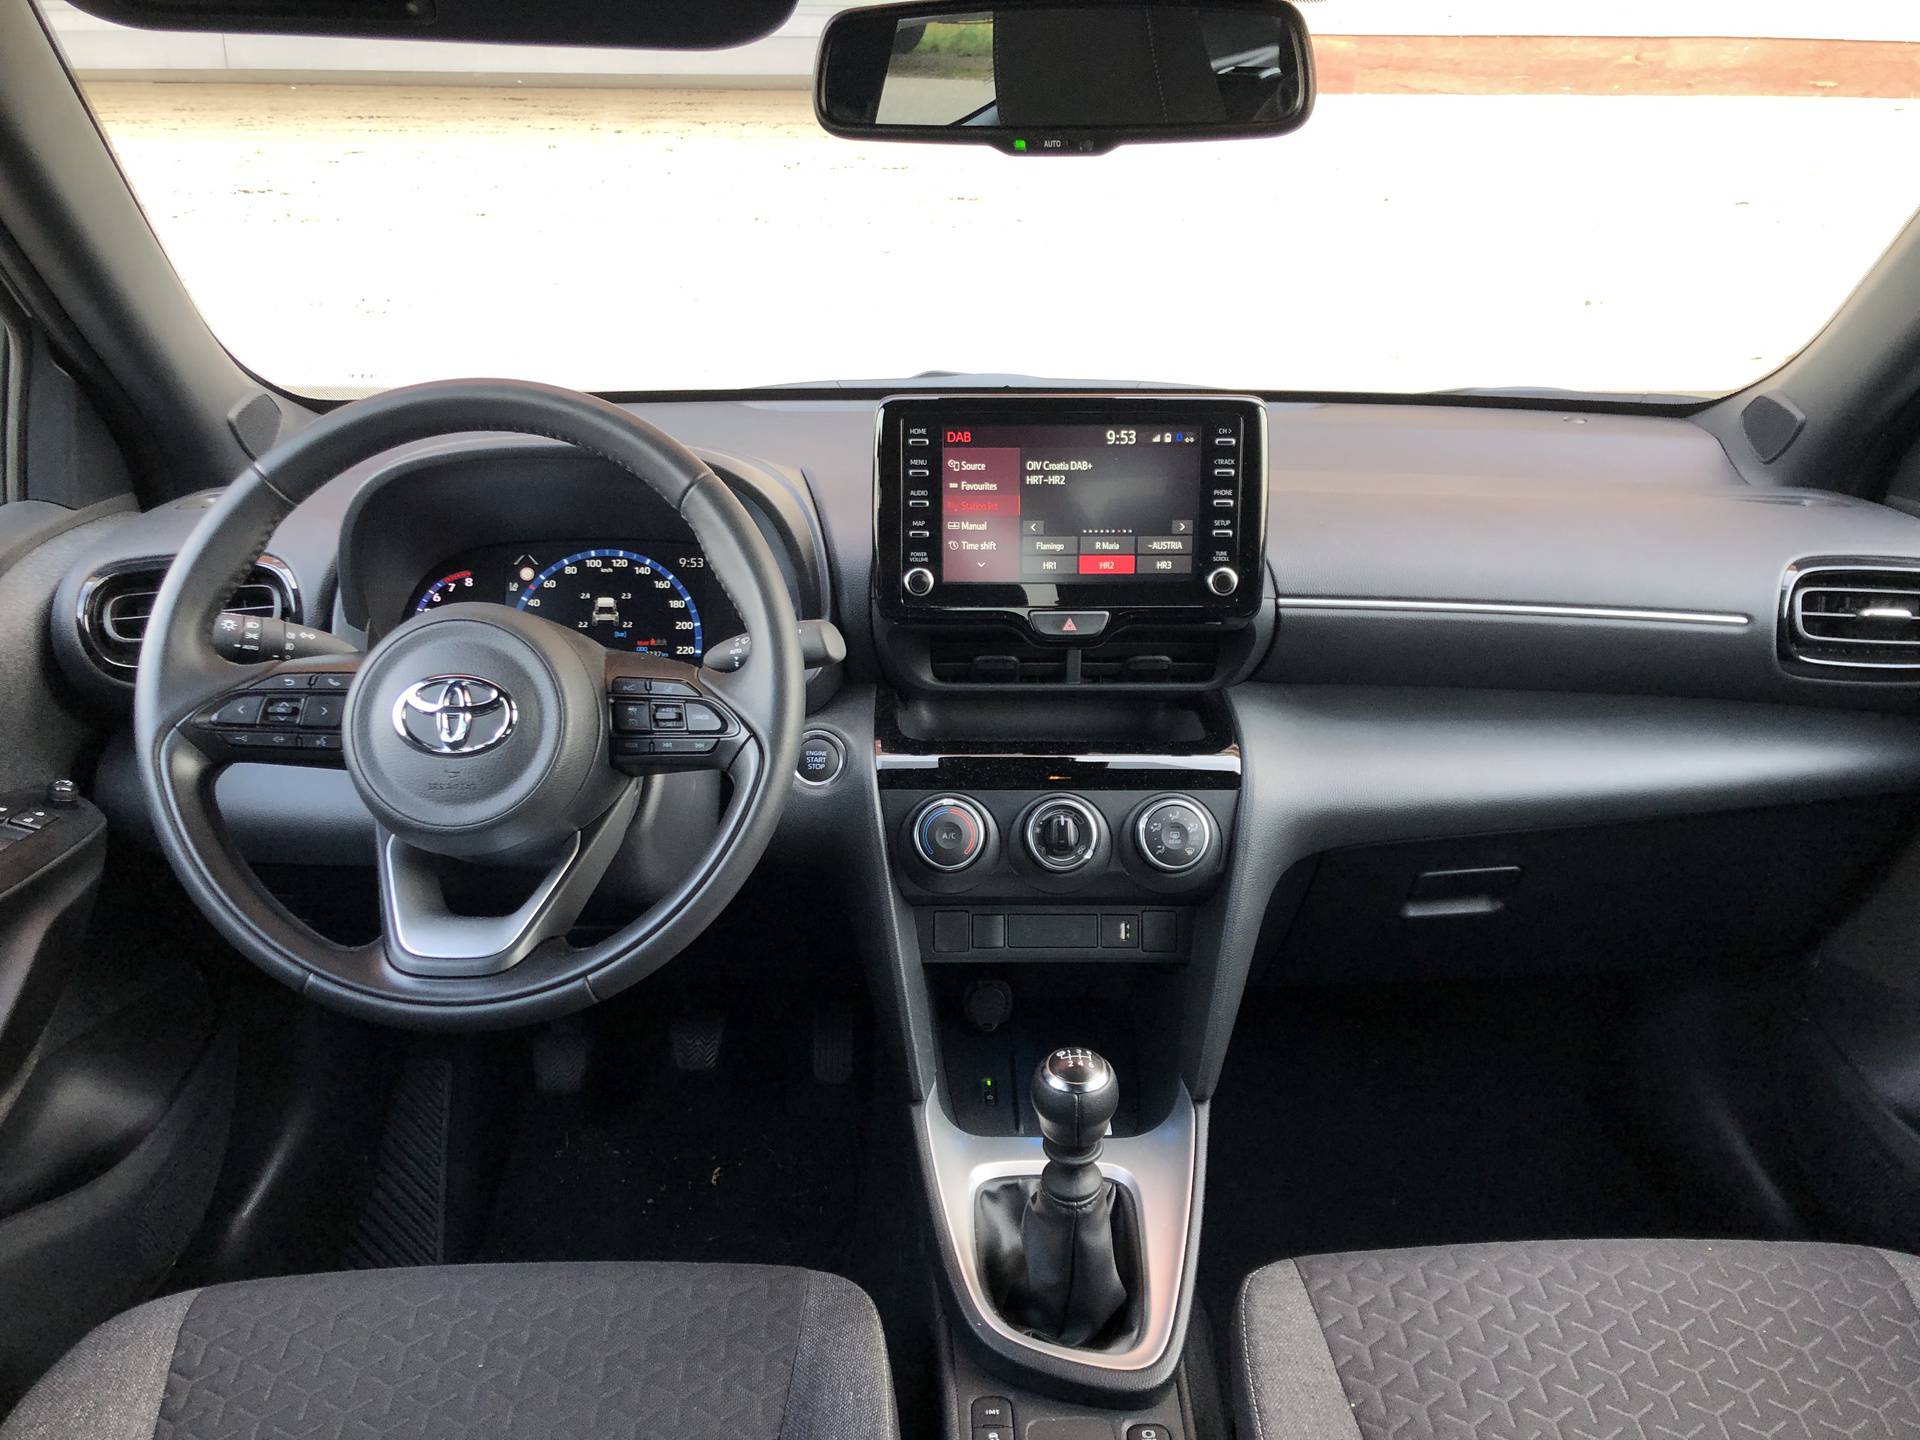 Toyotin najmanji SUV pažnju privlači izgledom, no ima još mnogo toga dobrog za ponuditi